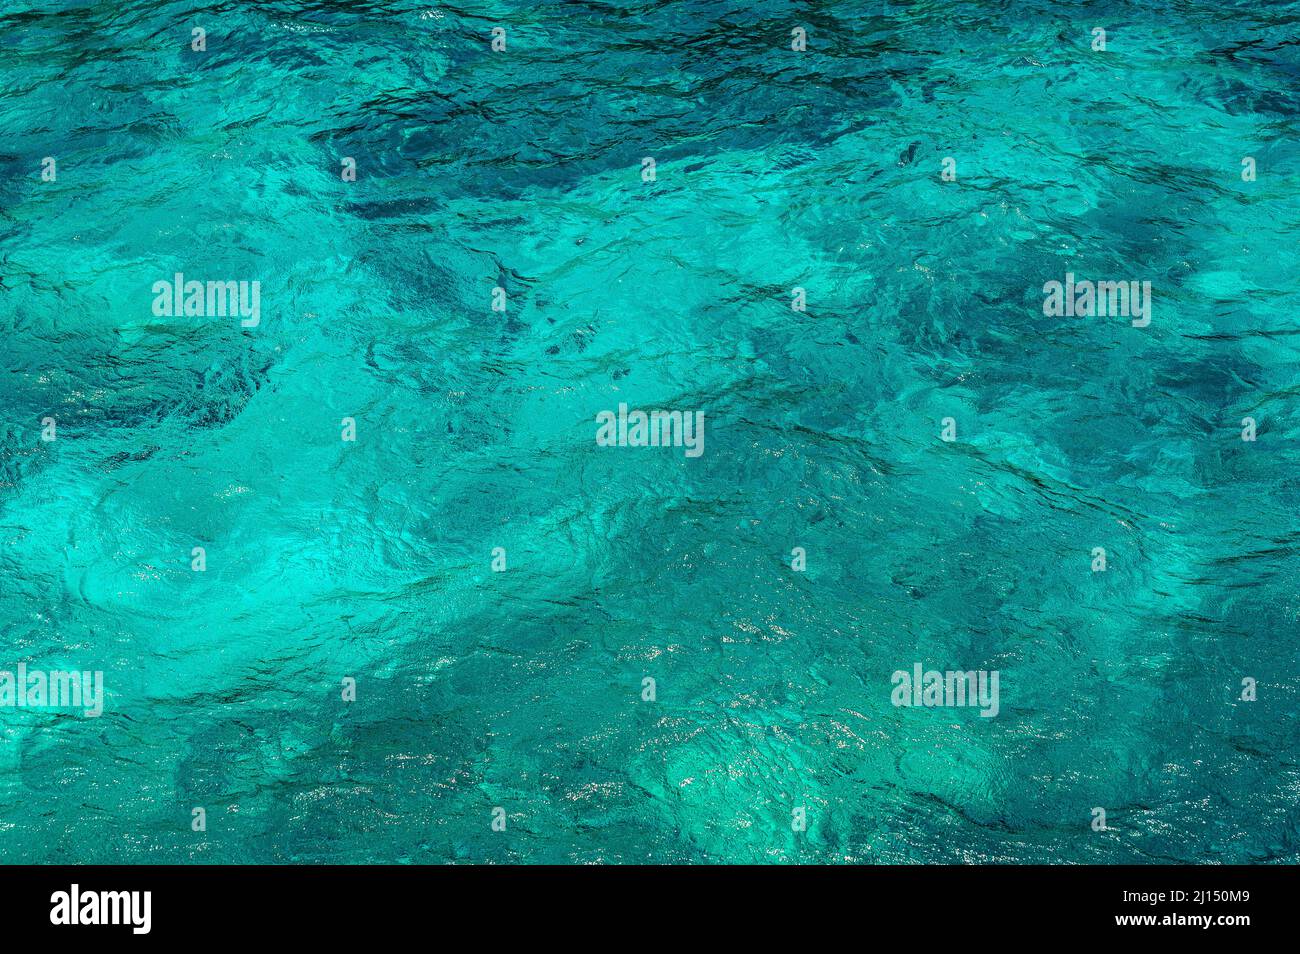 Foto zeigt Textur des Ozeans. Die Oberfläche des Meeres ist türkis. Ozeanwasser Muster ist hell und in verschiedenen Blautönen. Hintergrund des Meerwassers ist tr Stockfoto